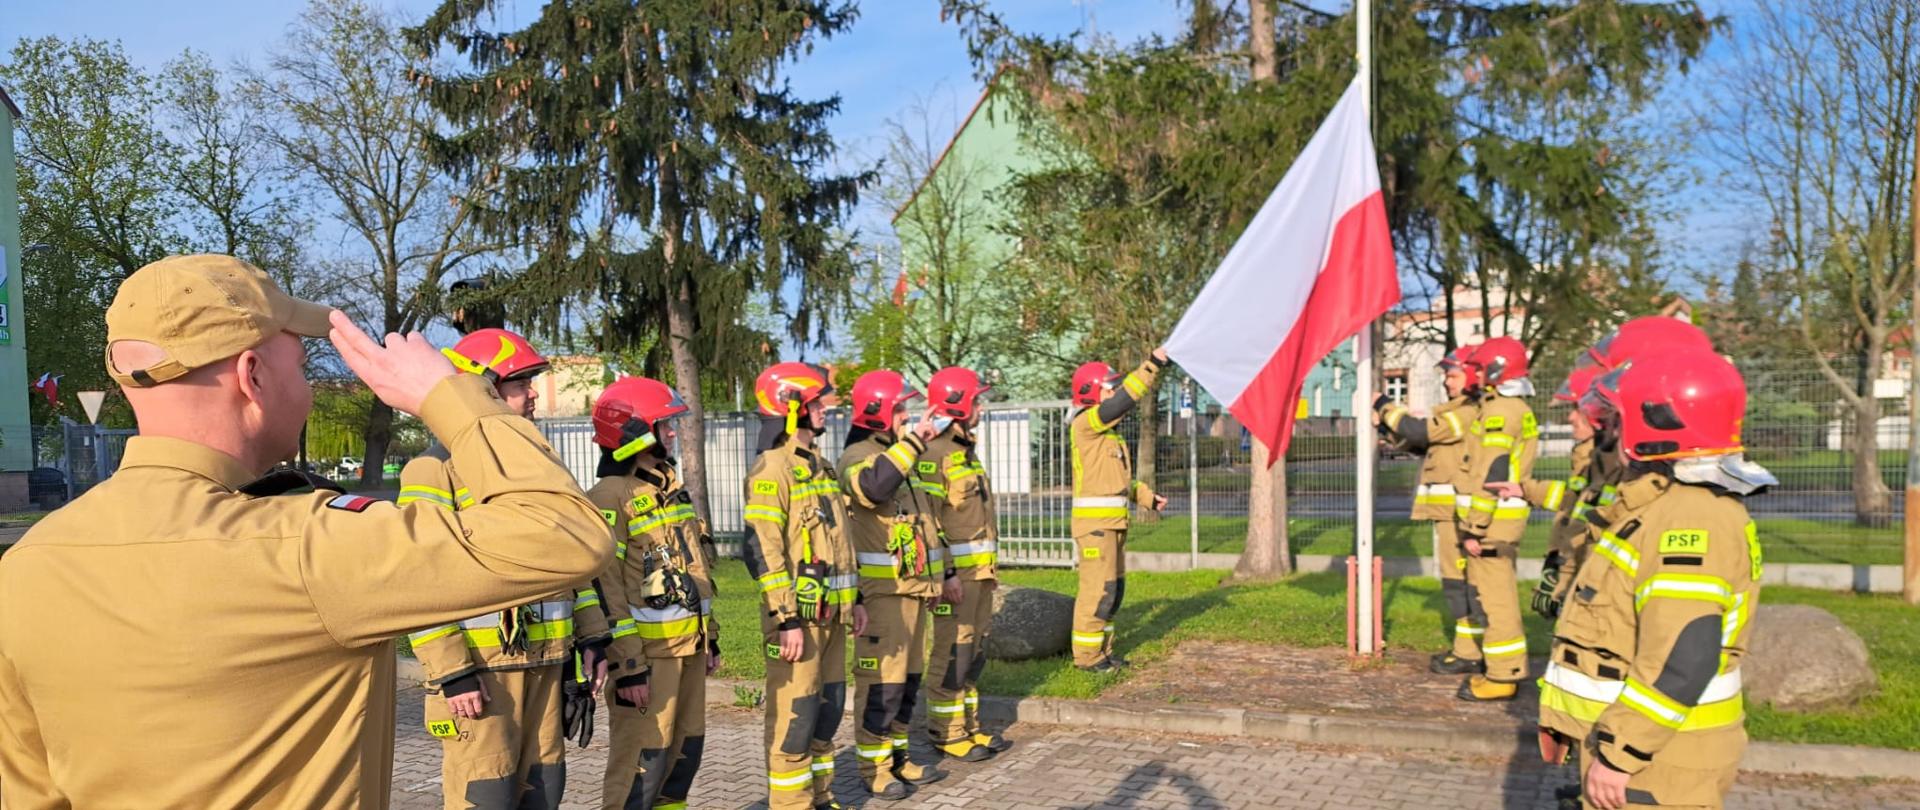 Umundurowani strażacy stojący w dwóch szeregach twarzami do siebie. W tle maszt na który wciągana jest flaga Rzeczypospolitej Polskiej.